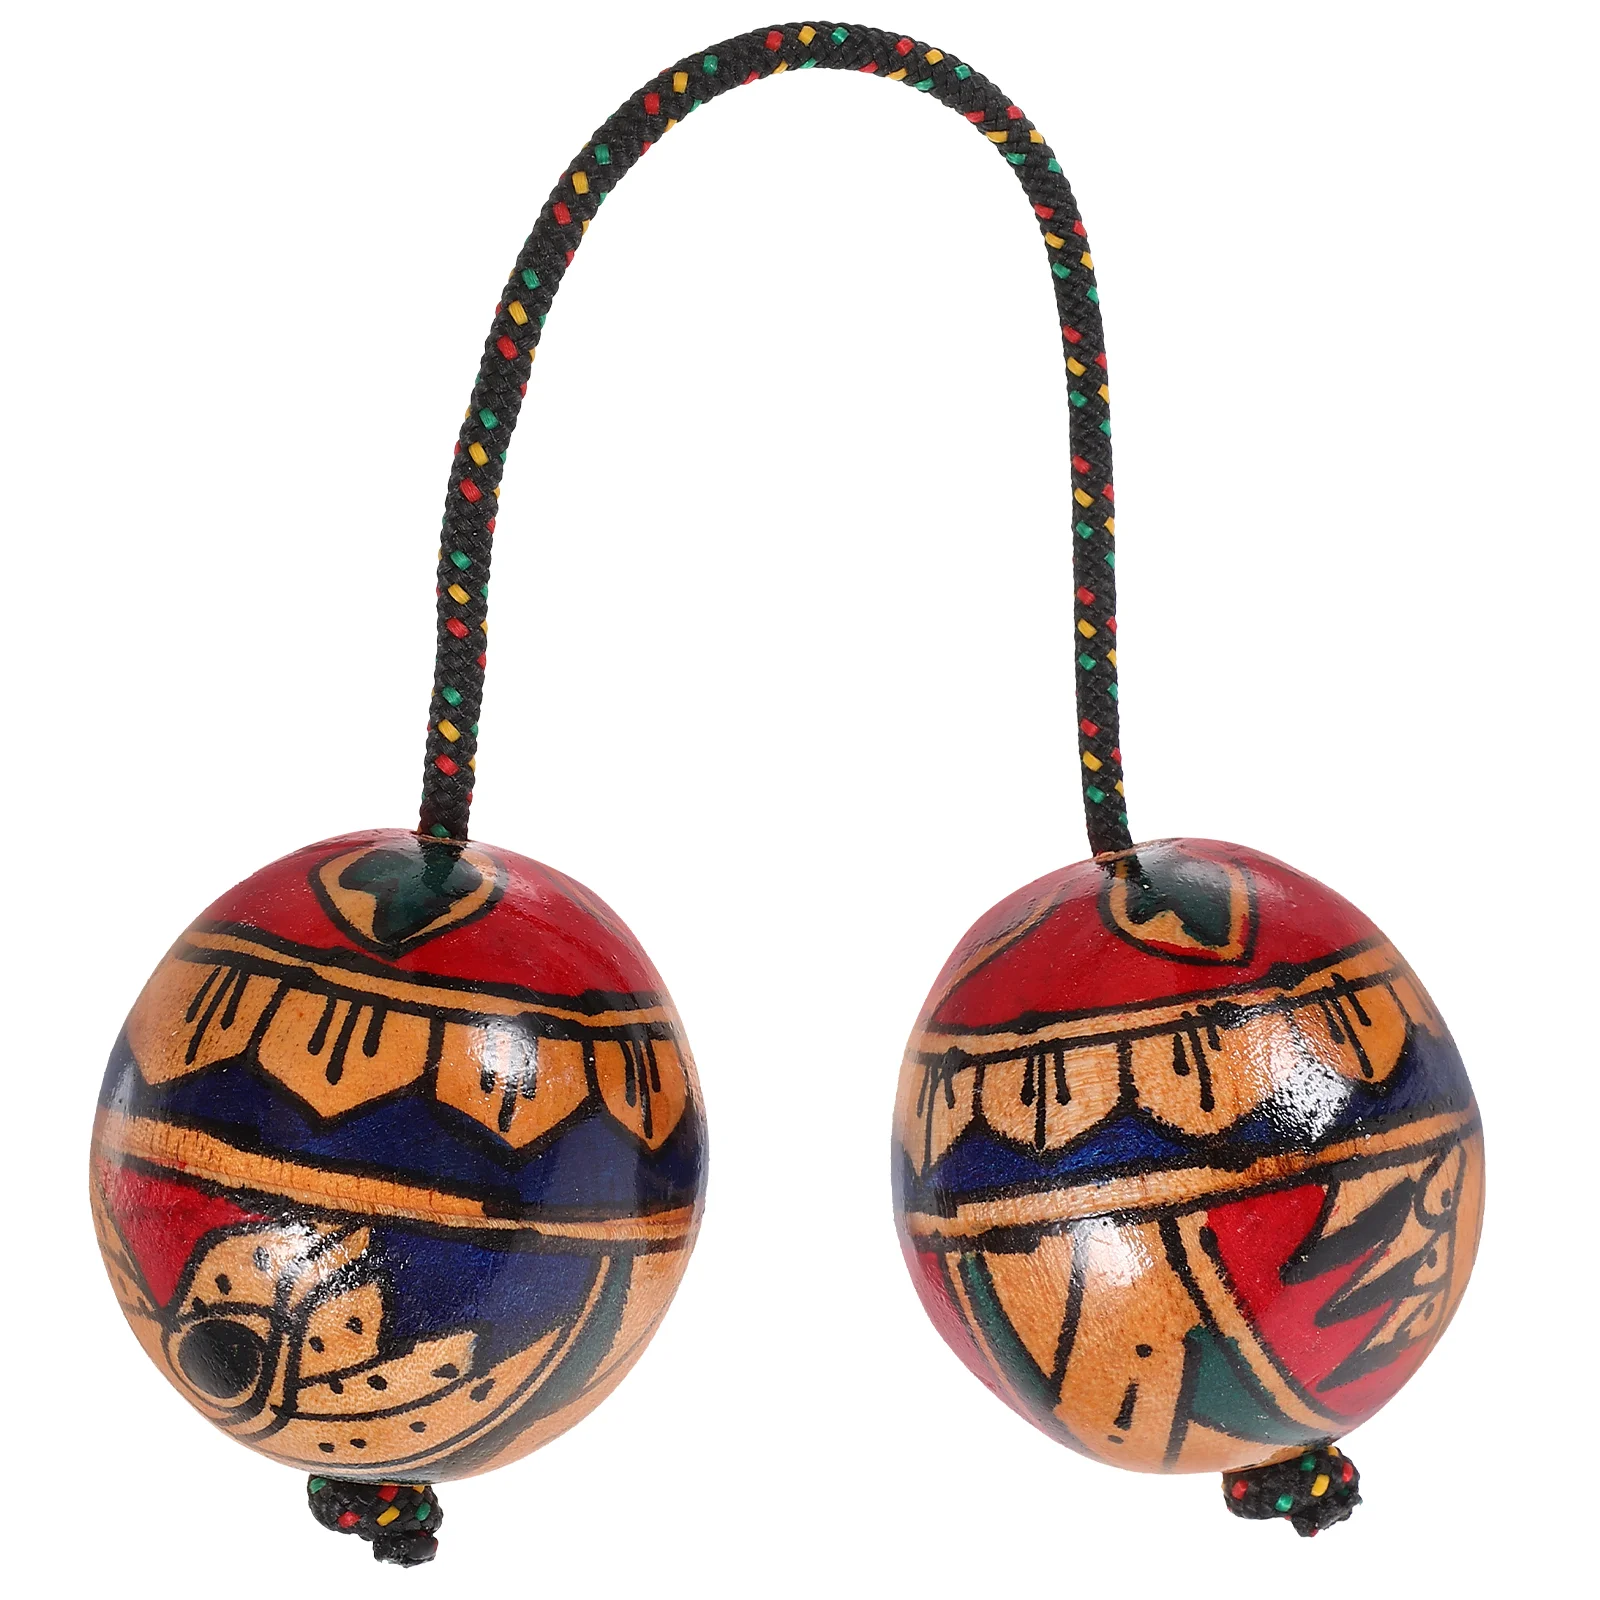 

Индонезийский инструмент ручной росписи в стиле ритма Маракас, музыкальные шарики, шейкер, перкуссионные инструменты